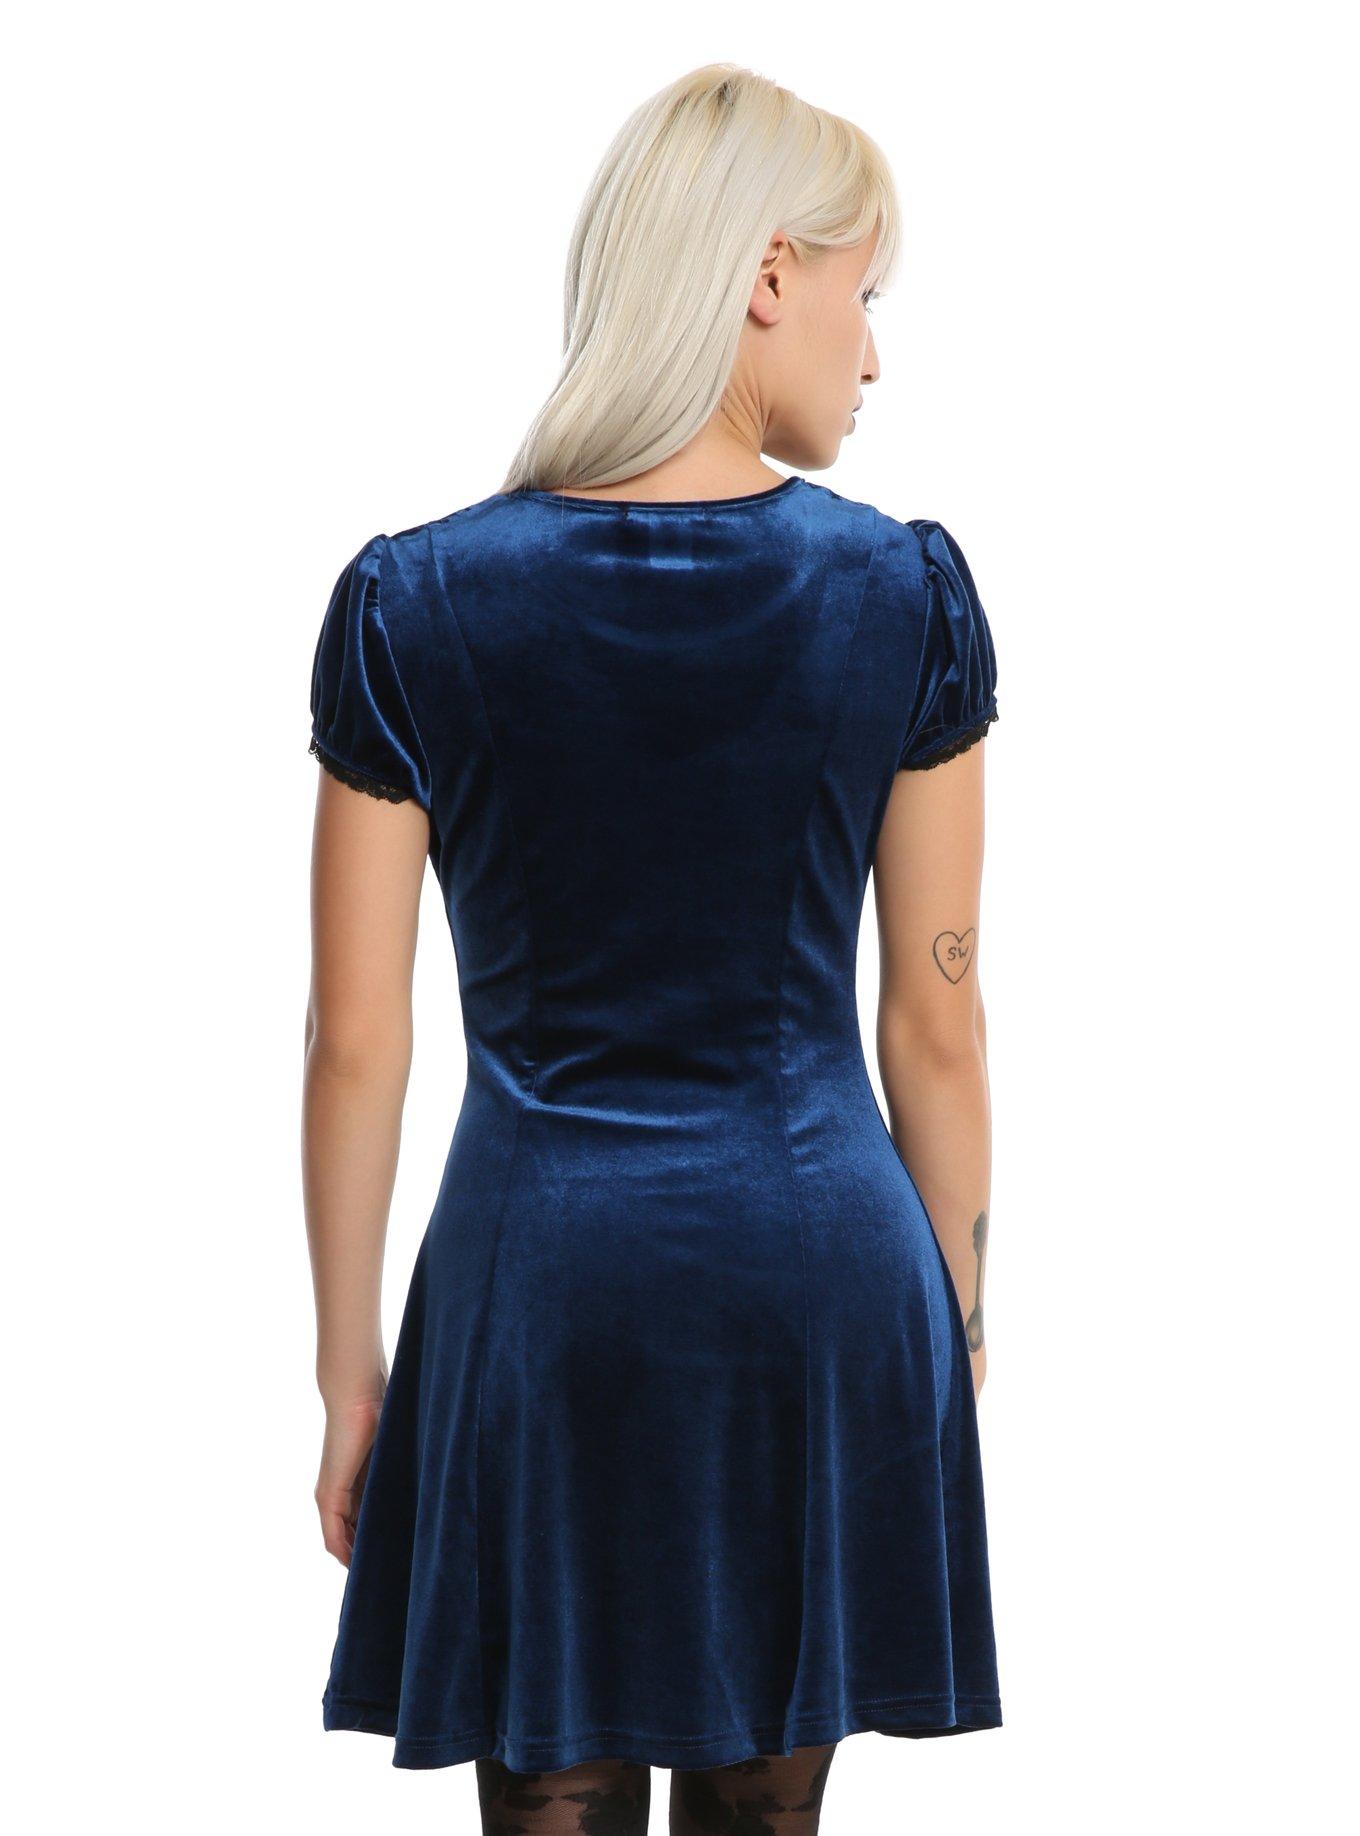 Blue Velvet Swiss Dot Yoke Dress, BLUE, alternate